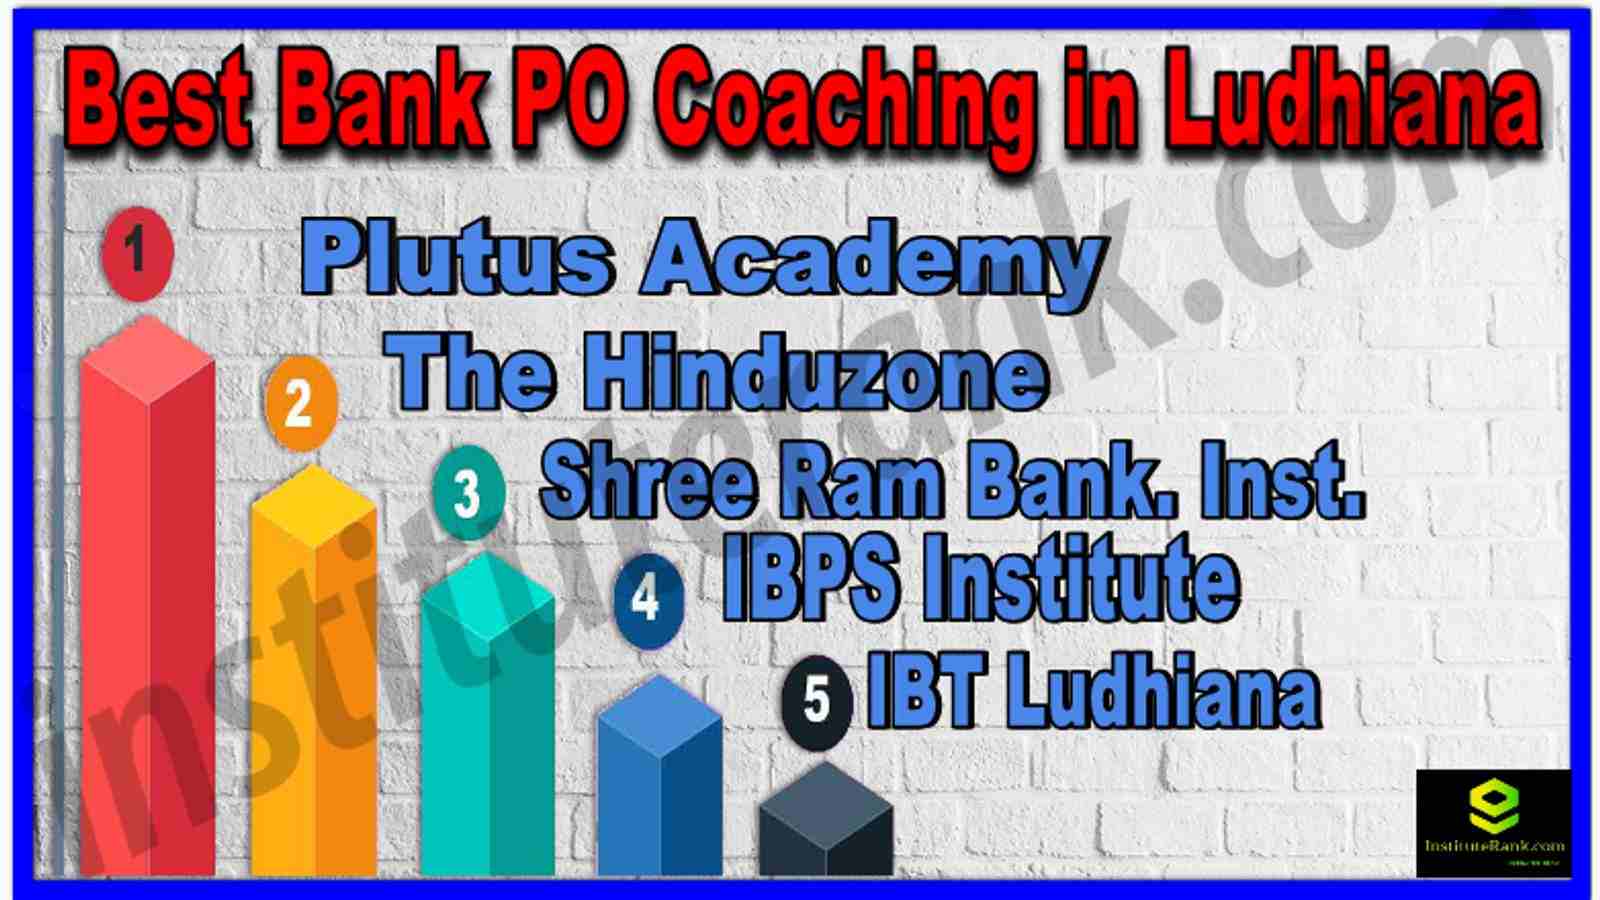 Best Bank PO Coaching in Ludhiana